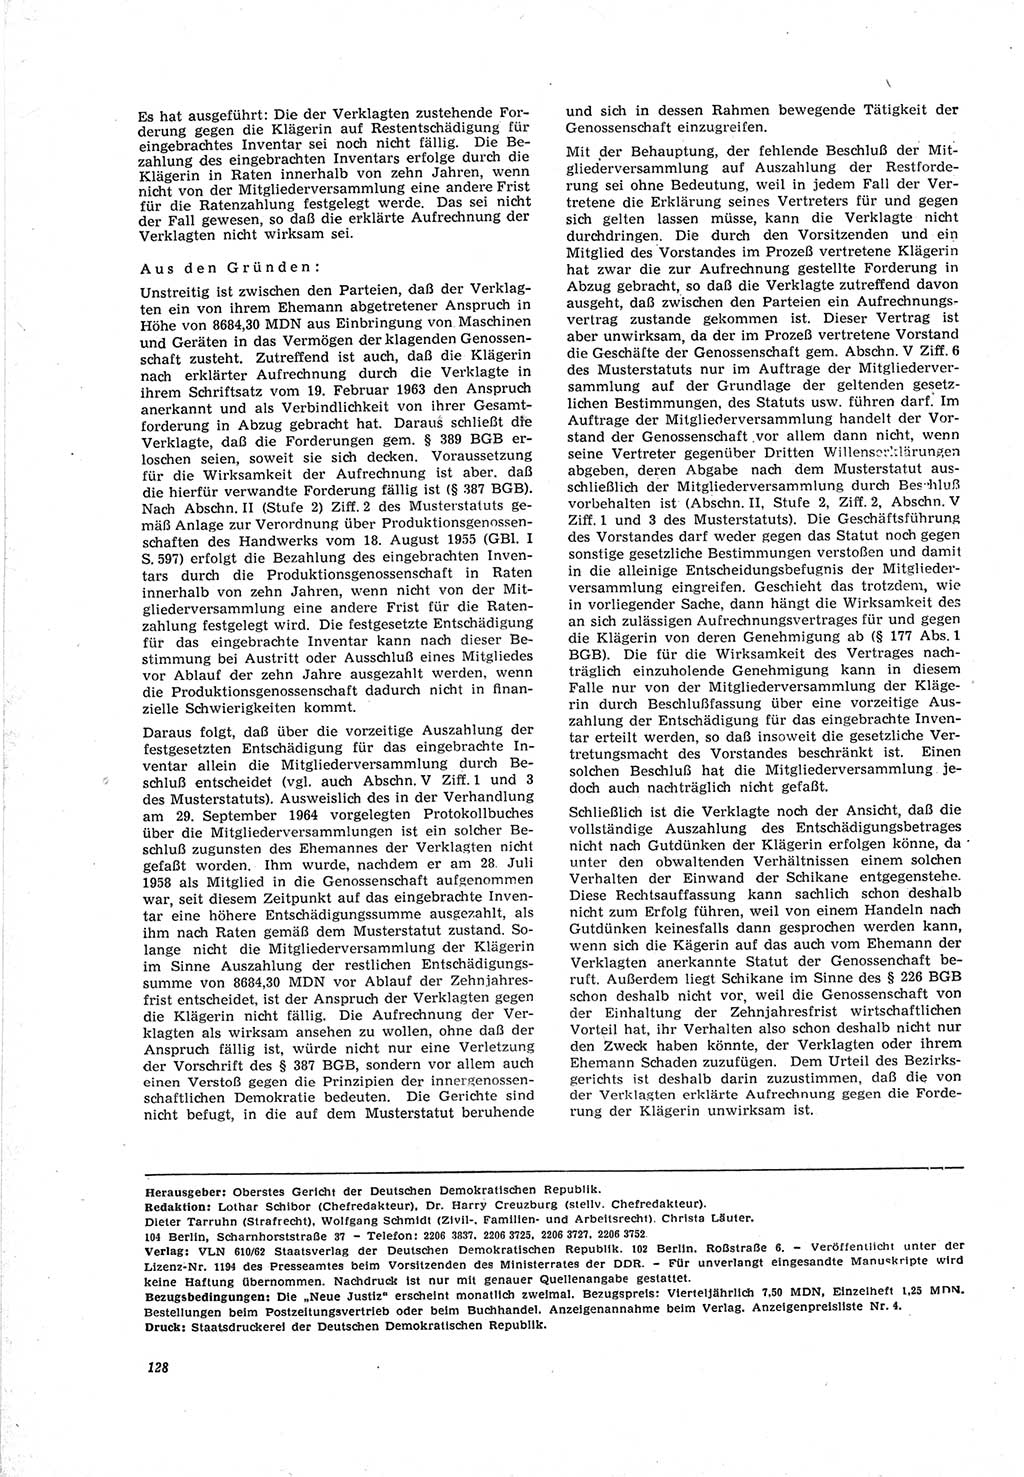 Neue Justiz (NJ), Zeitschrift für Recht und Rechtswissenschaft [Deutsche Demokratische Republik (DDR)], 19. Jahrgang 1965, Seite 128 (NJ DDR 1965, S. 128)